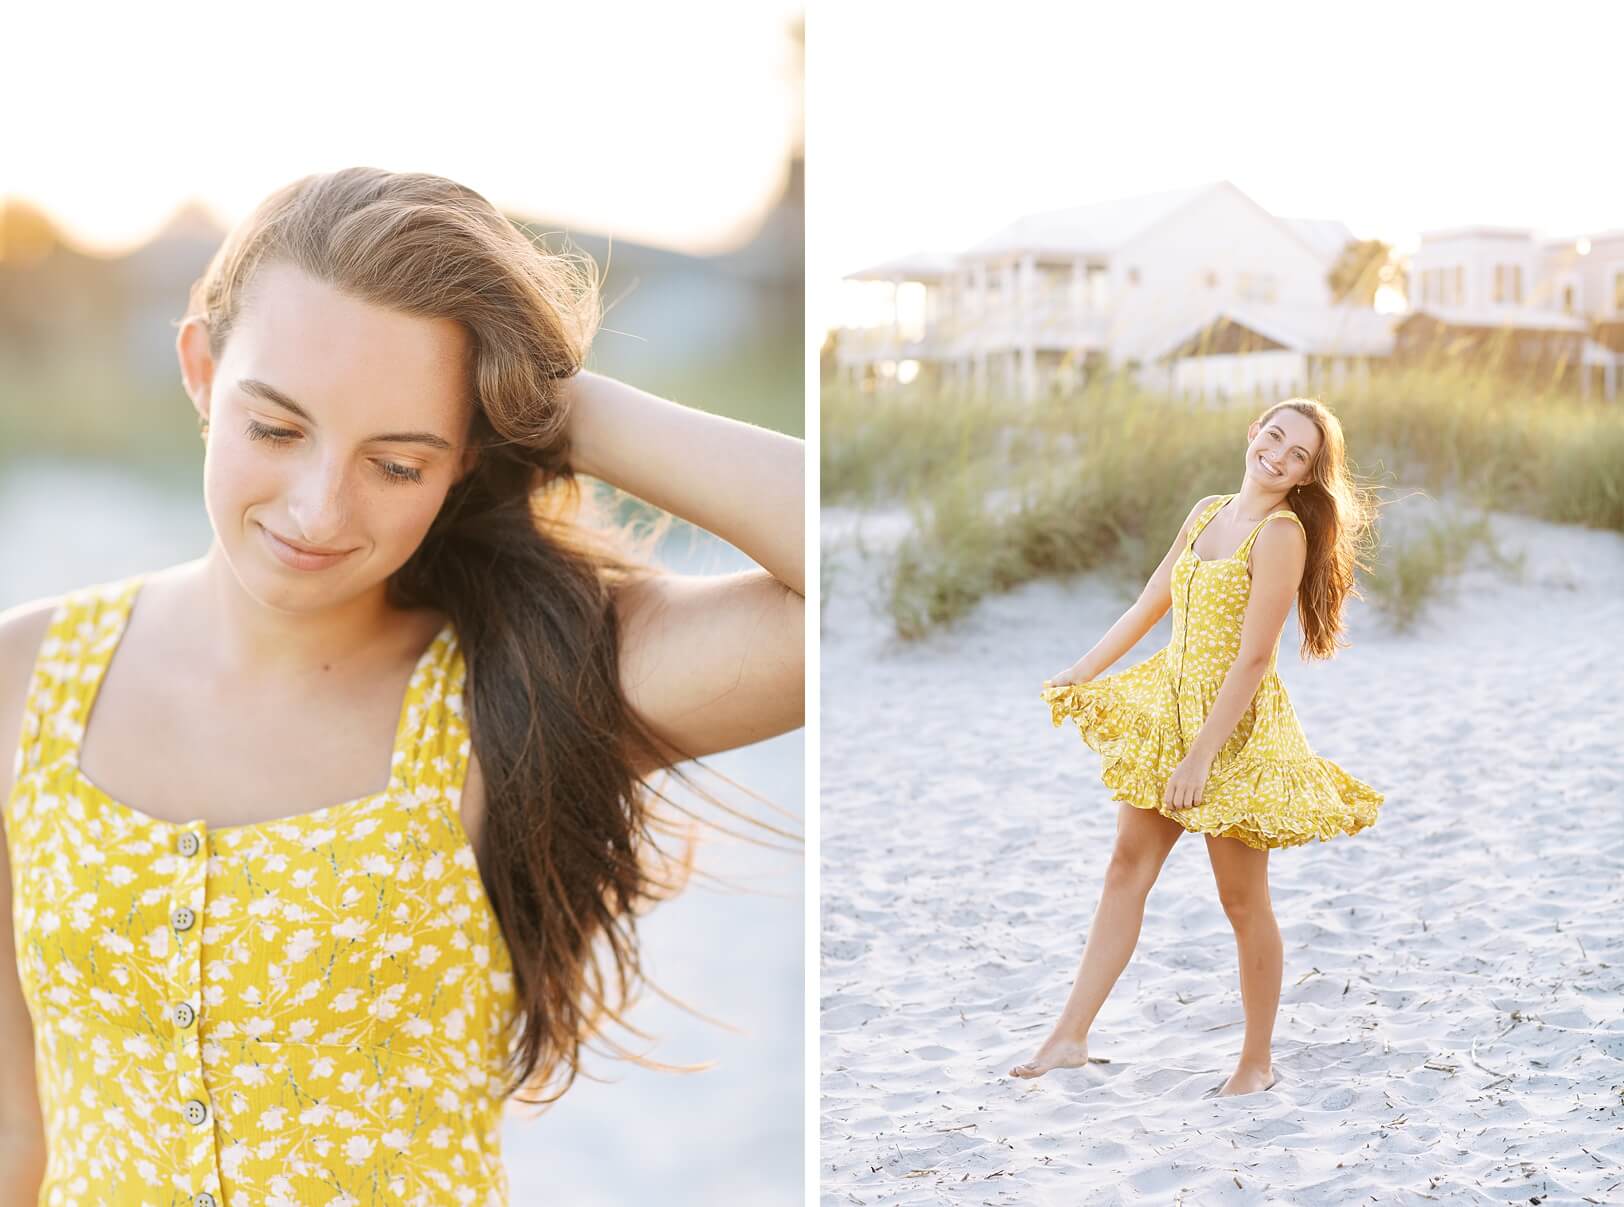 Girl dancing in yellow dress on beach